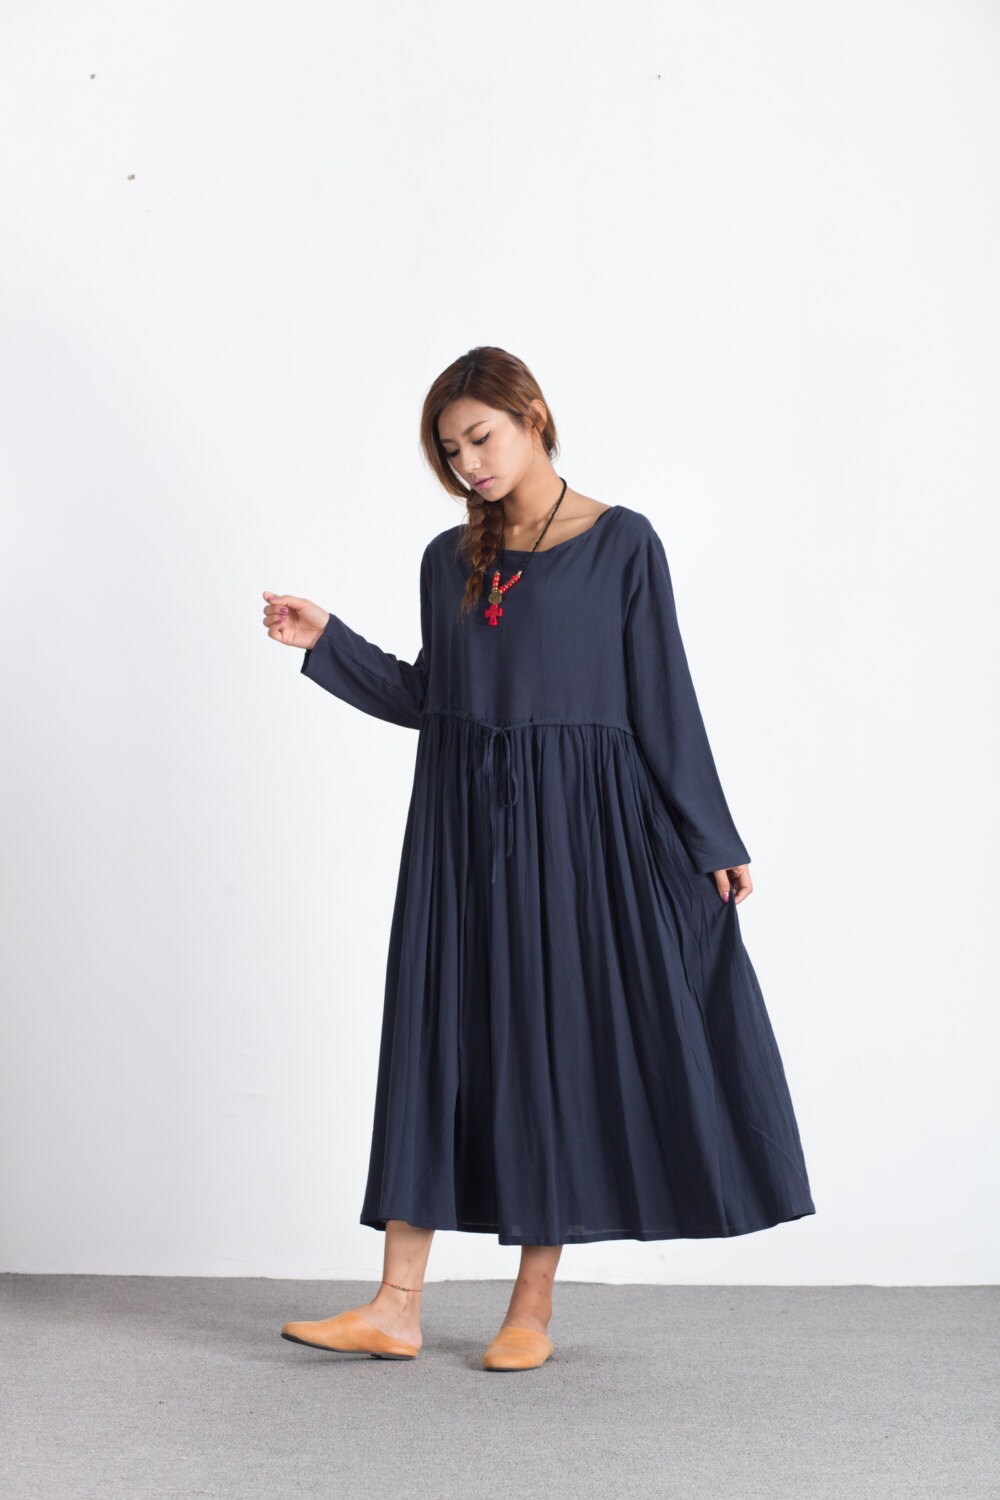 Women linen dress Long sleeve maxi cotton dress with belt | Etsy